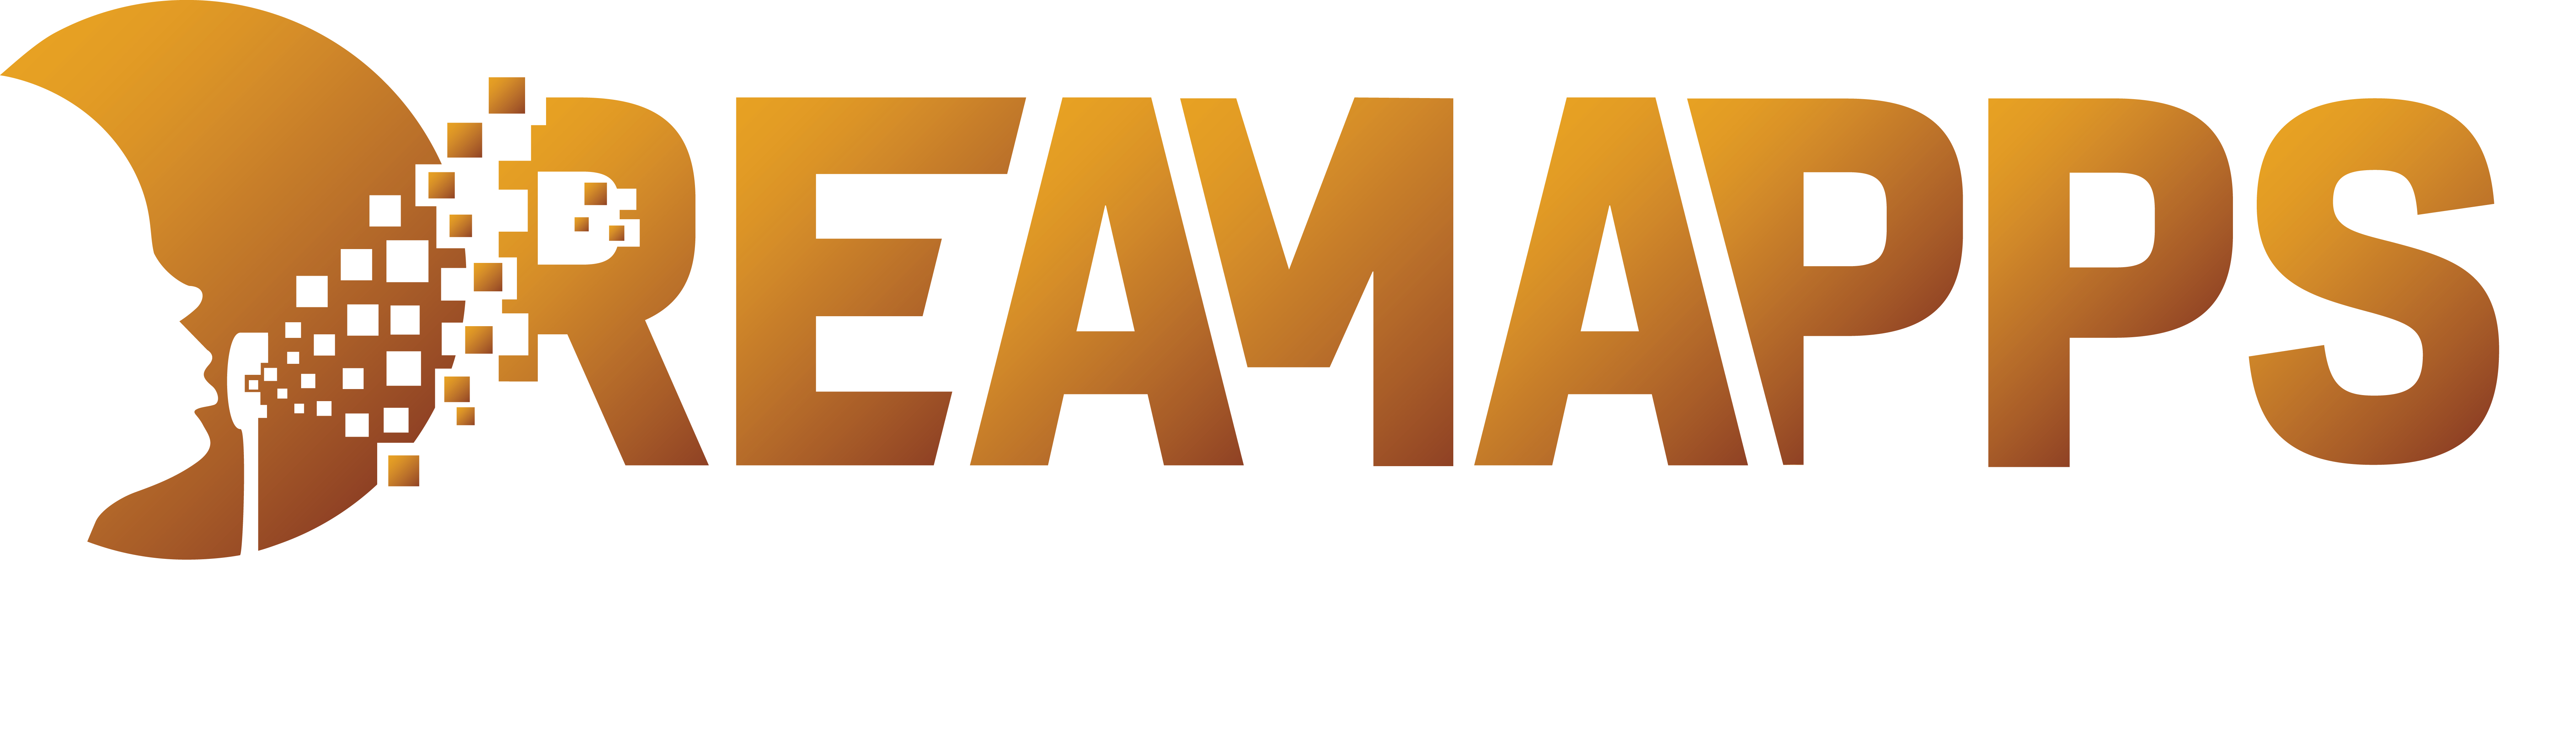 DreamApps Sašo Mežnar s.p., svetovanje in razvoj programske opreme